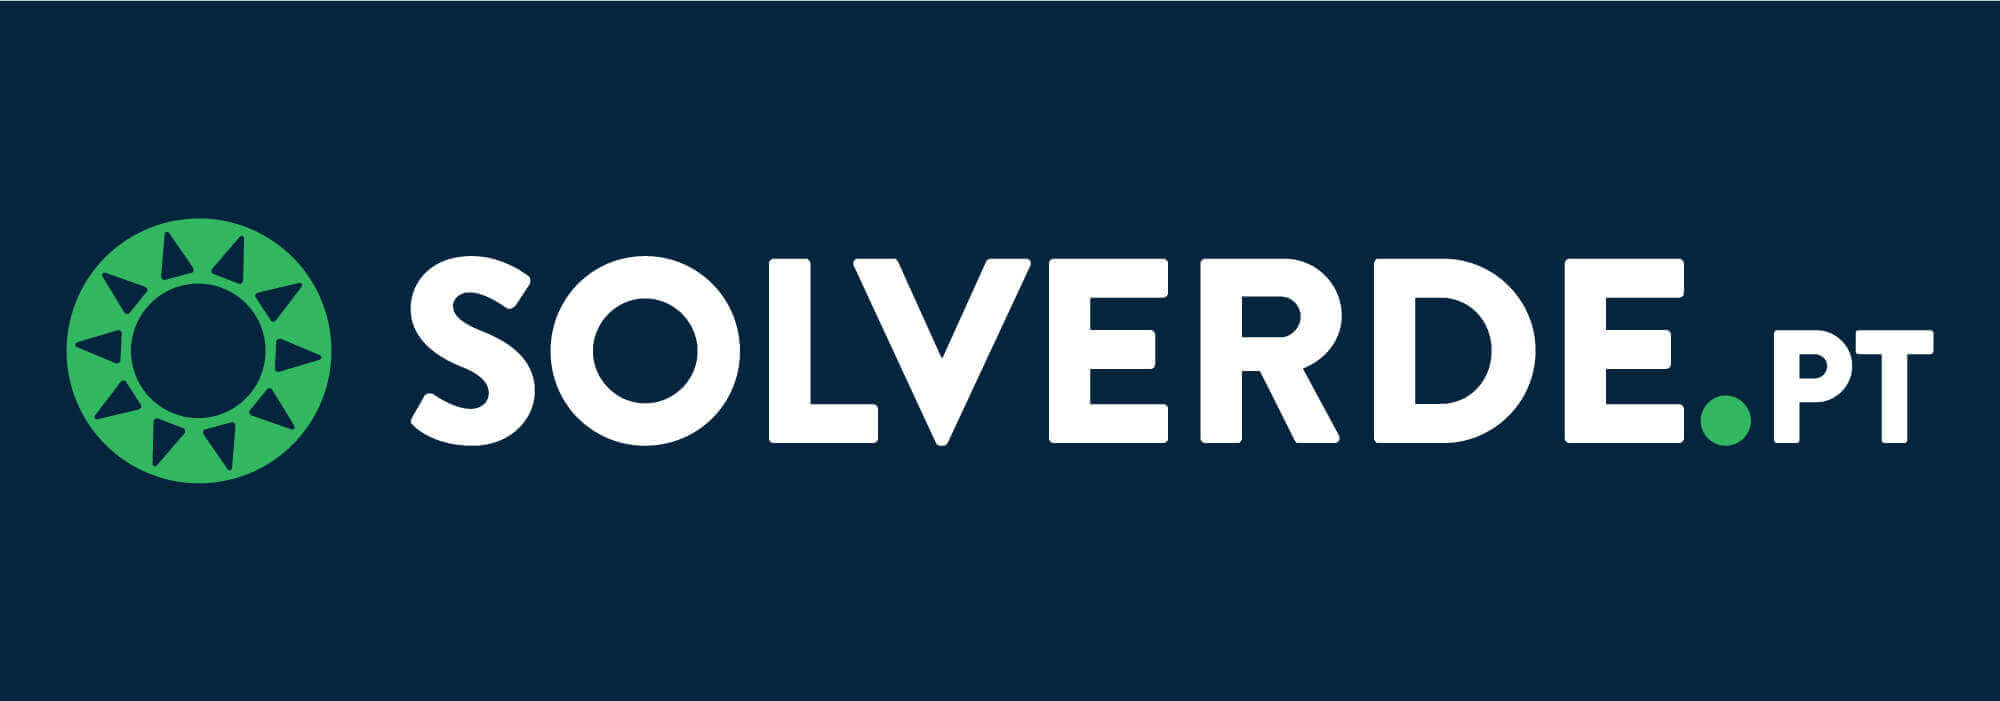 Solverde.pt logo